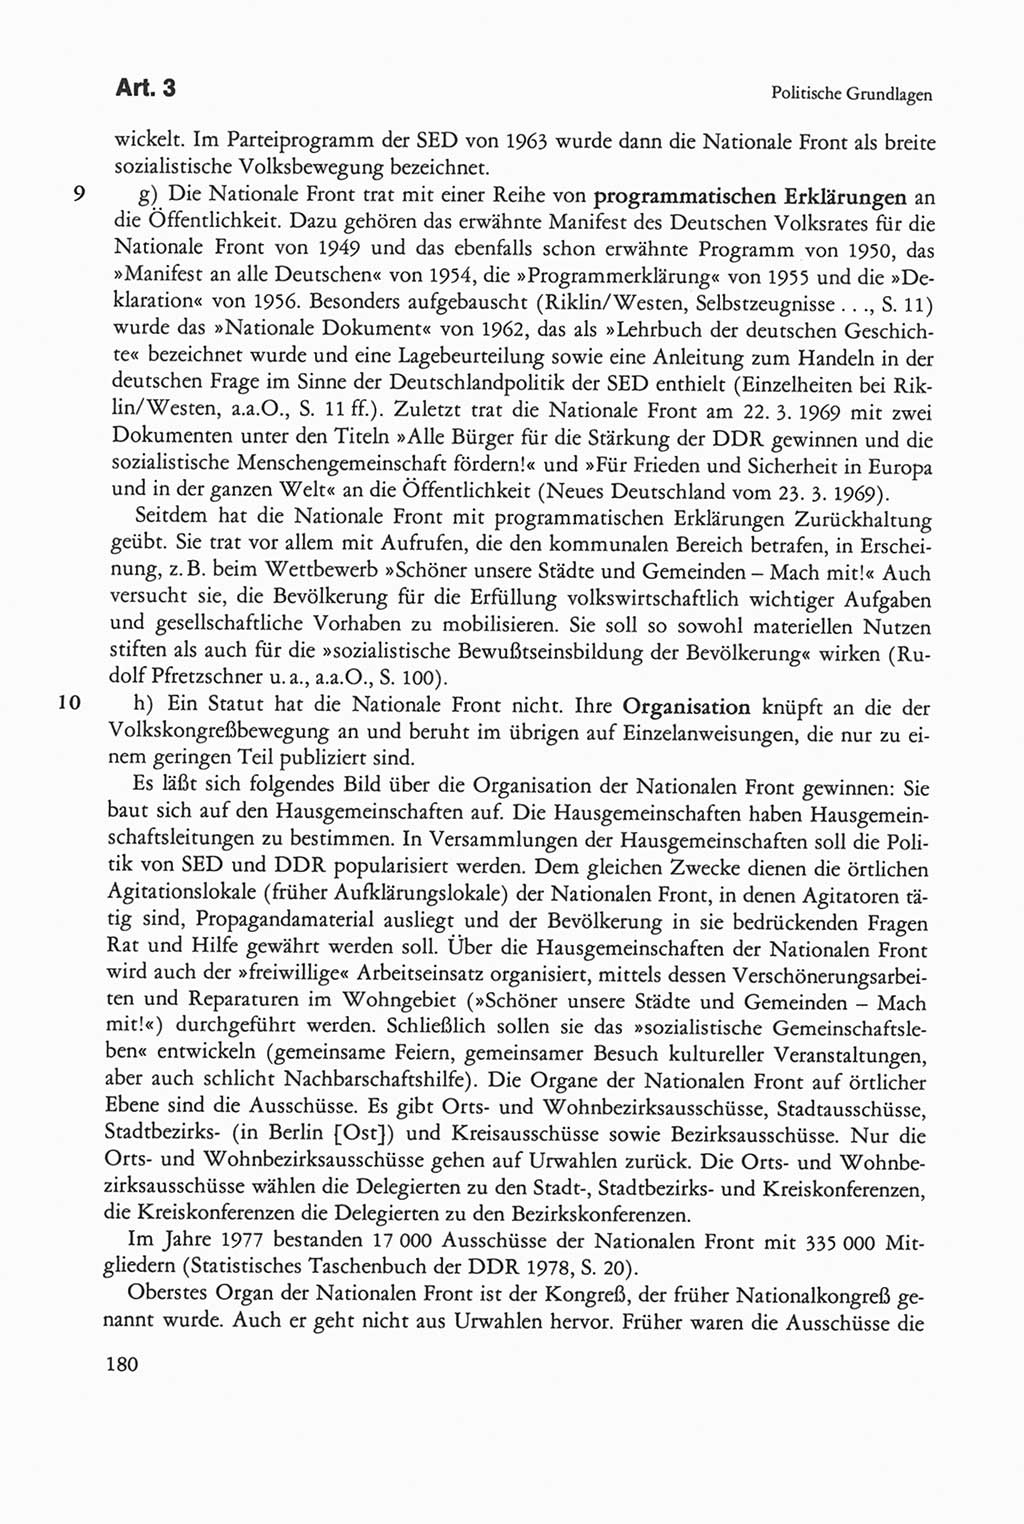 Die sozialistische Verfassung der Deutschen Demokratischen Republik (DDR), Kommentar 1982, Seite 180 (Soz. Verf. DDR Komm. 1982, S. 180)